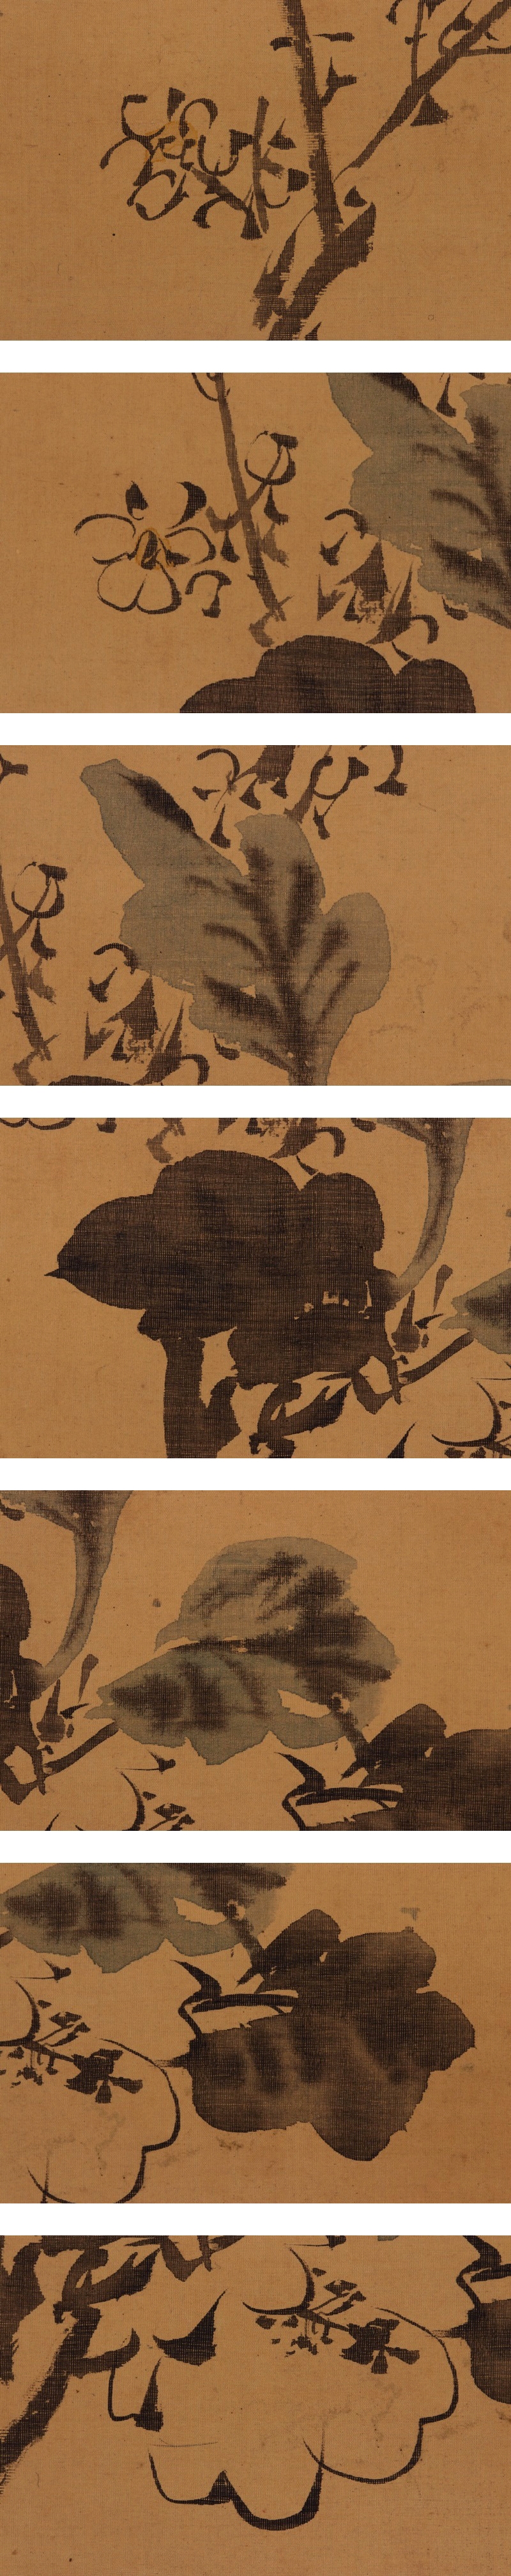 日本製在庫谷文晁◆絹本◆合箱◆掛軸 v11042 花鳥、鳥獣